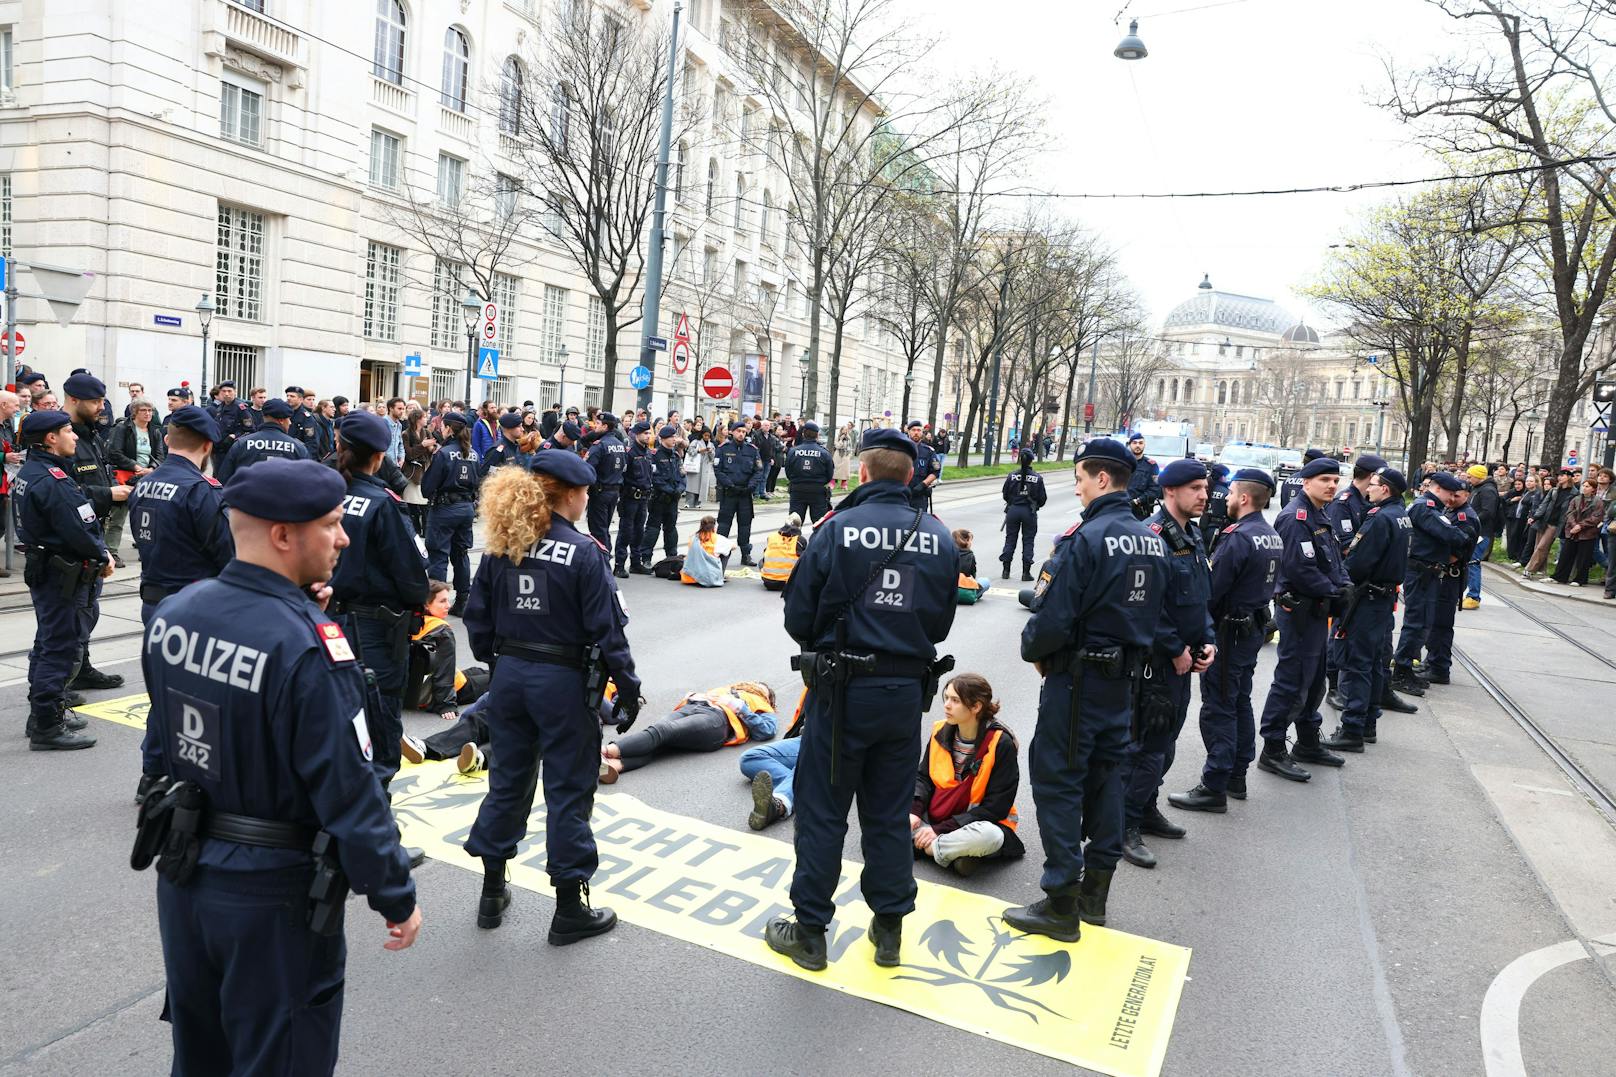 Die Letzte Generation blockierte die Straßen erneut. Auch die Polizei war kurz nach 16 Uhr bereits vor Ort.